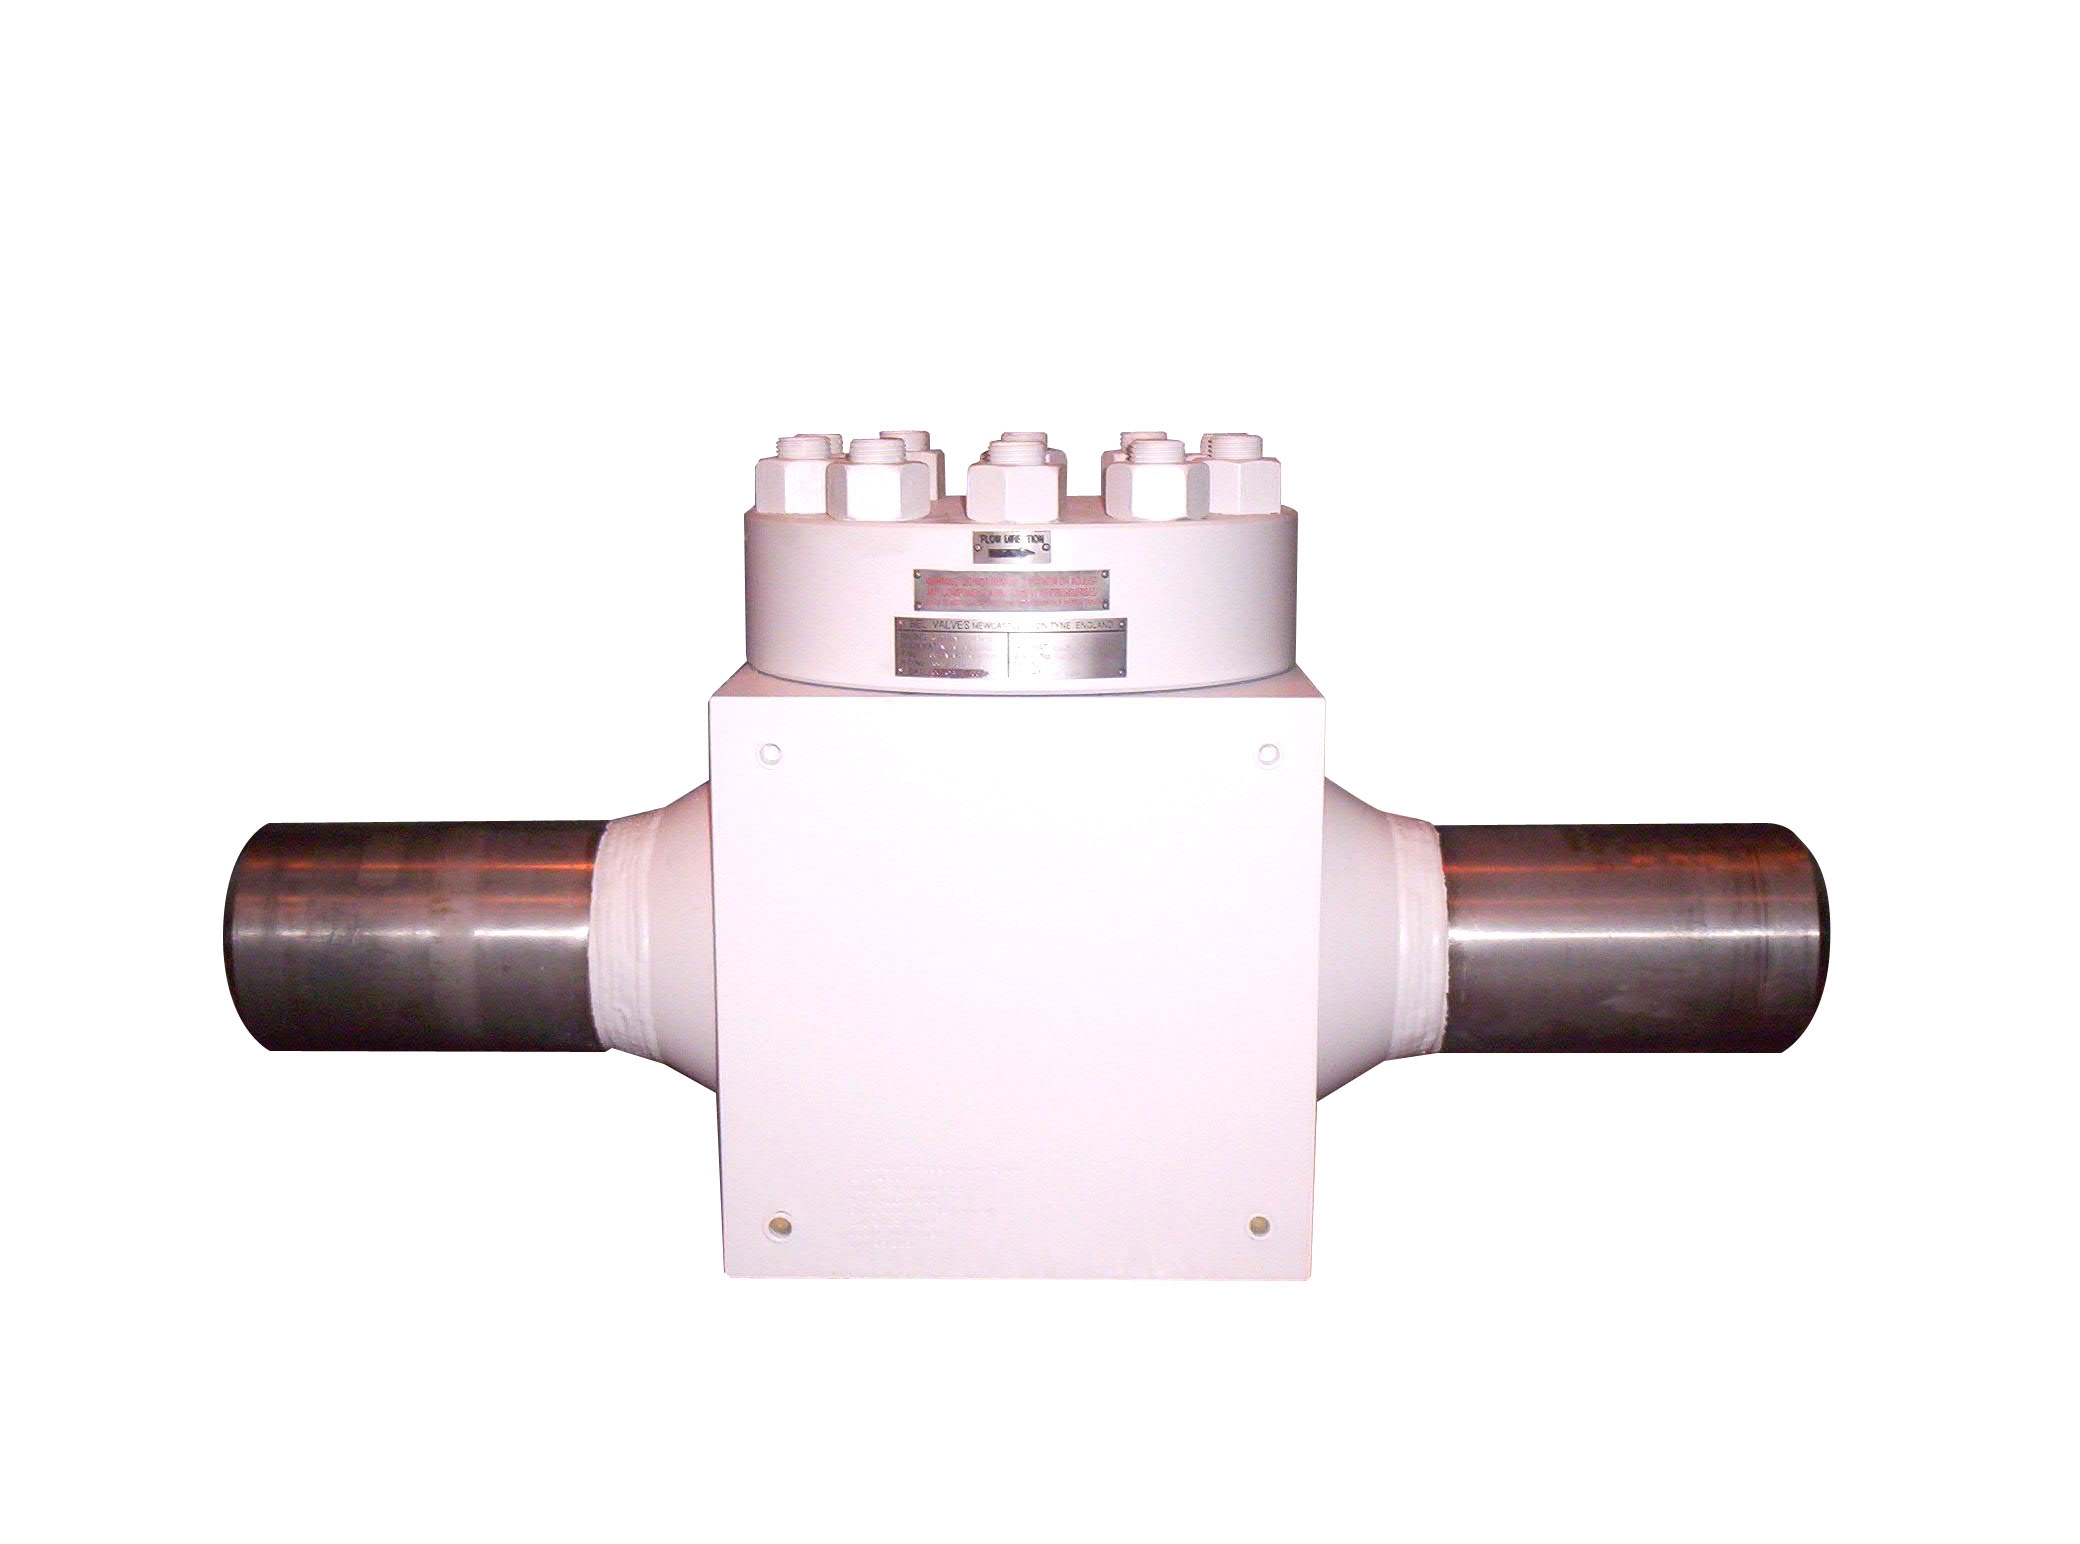 Globe valve, BEL Valves, surface valves, onshore valves, petrochemical application